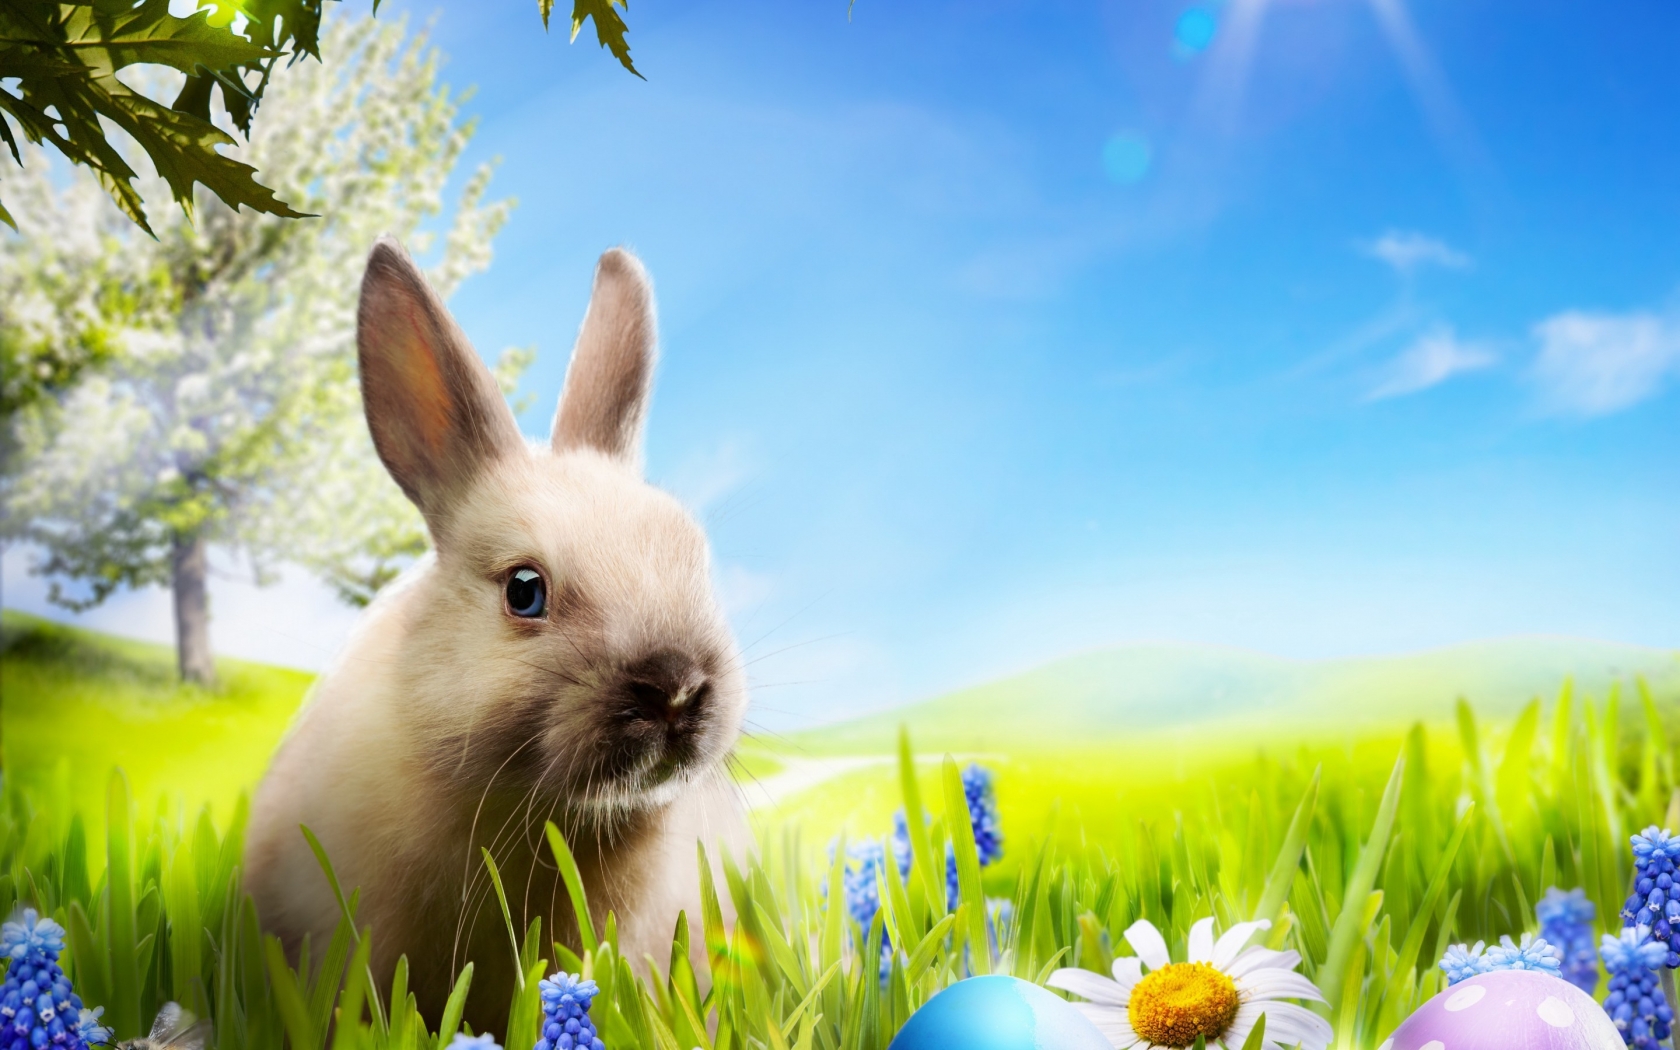 Little Rabbit for 1680 x 1050 widescreen resolution